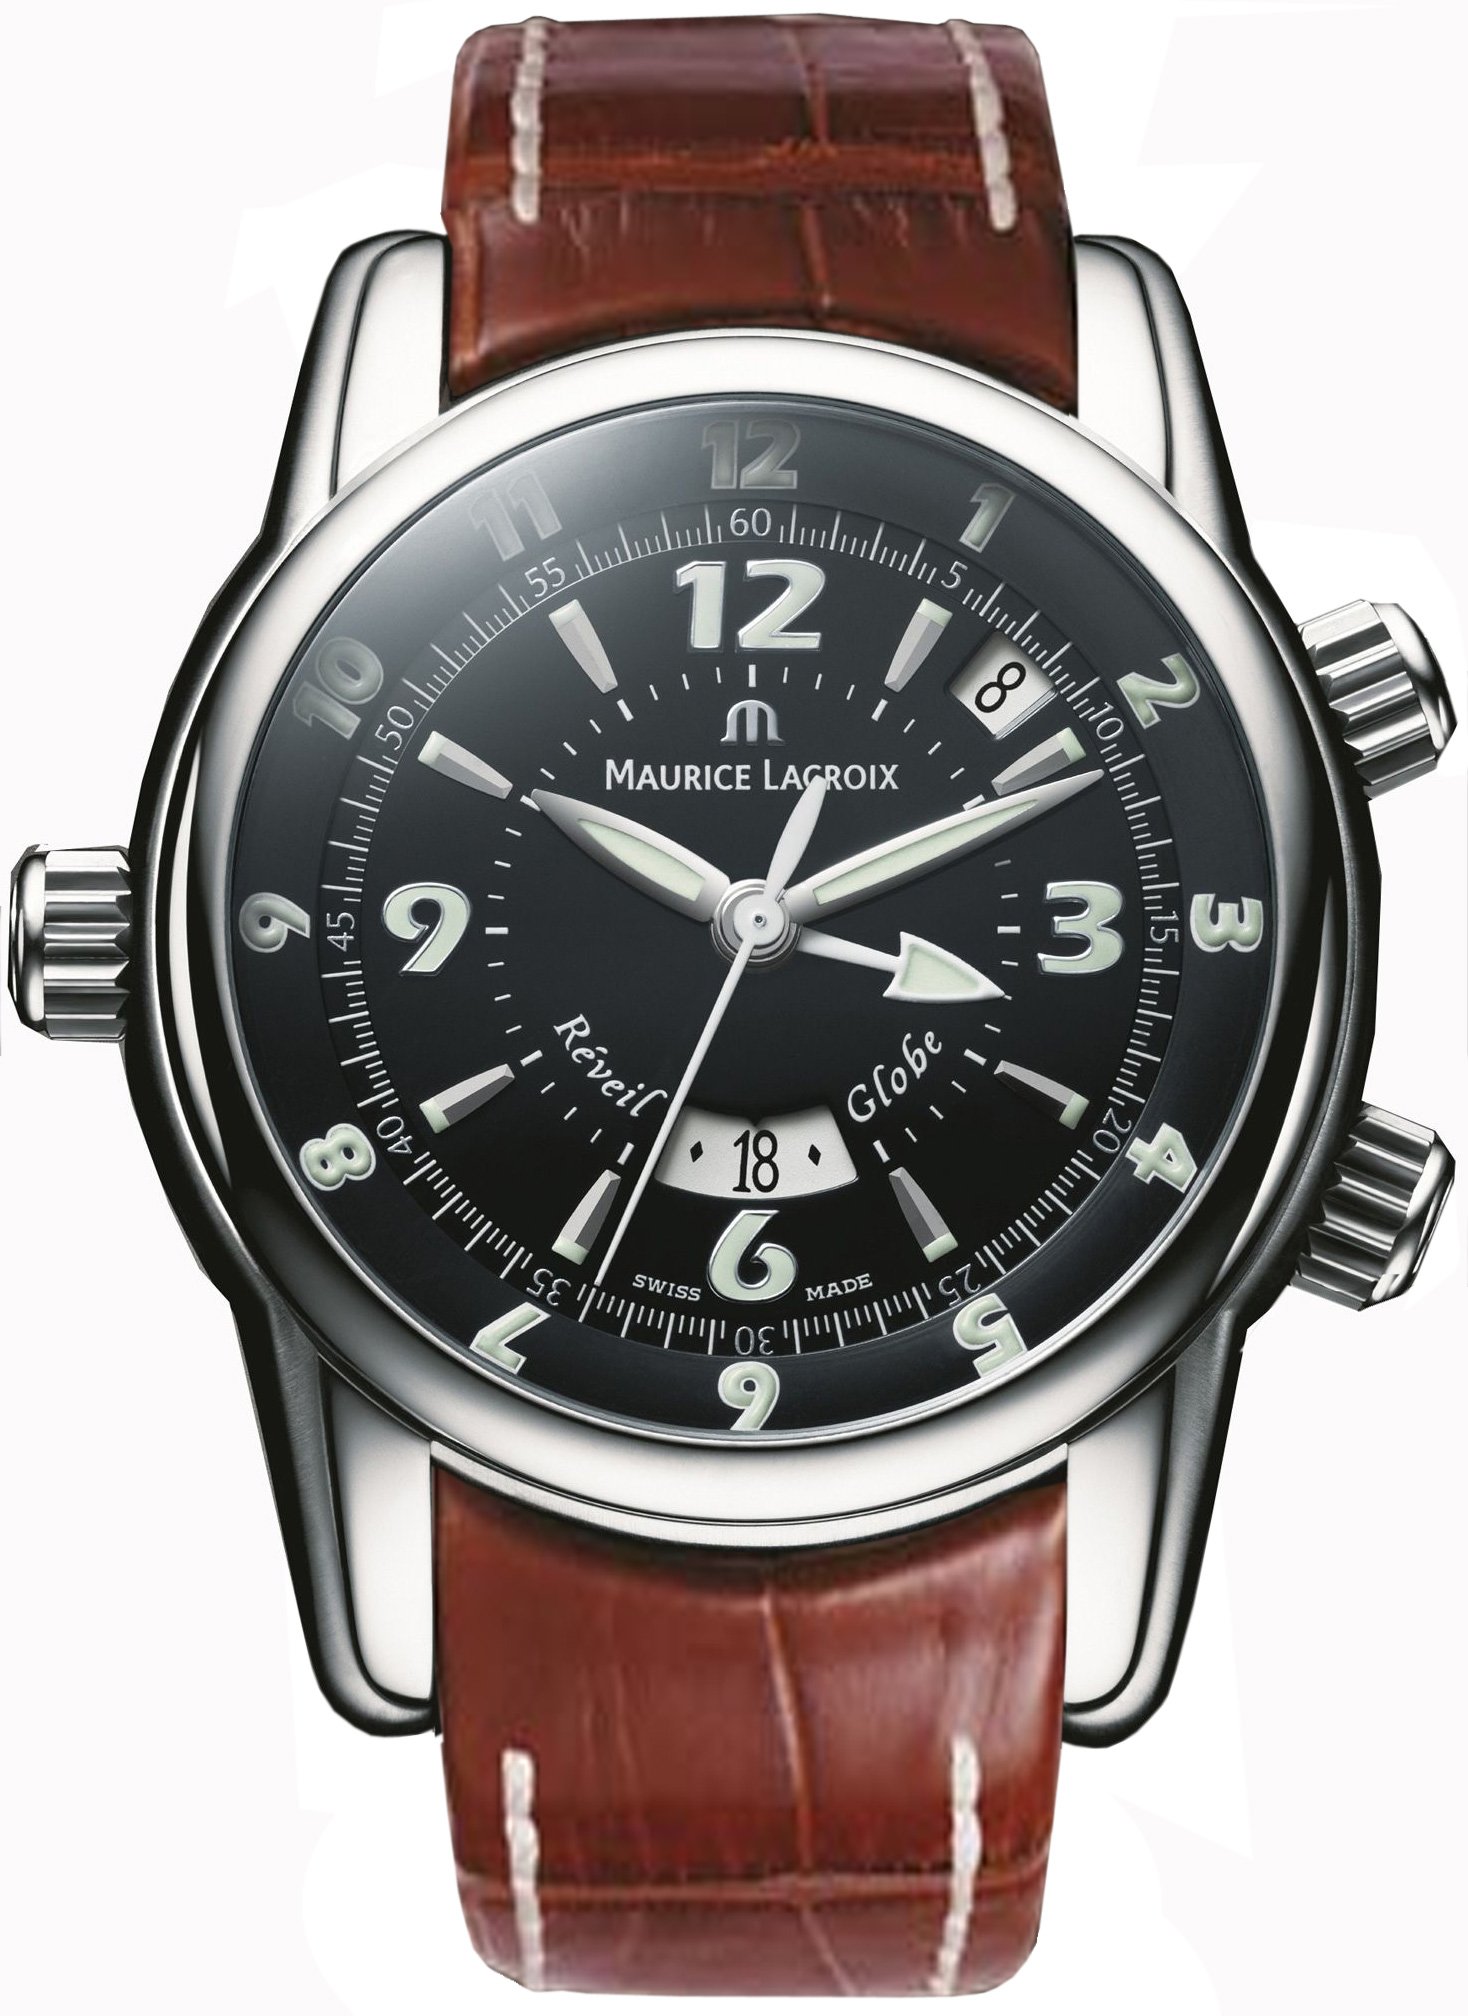 Швейцарские наручные часы с автоподзаводом. Maurice Lacroix механические часы. Часы Maurice Lacroix Masterpiece mp6318. Маурис лакроикс часы механика. Часы Maurice Lacroix mp6338.